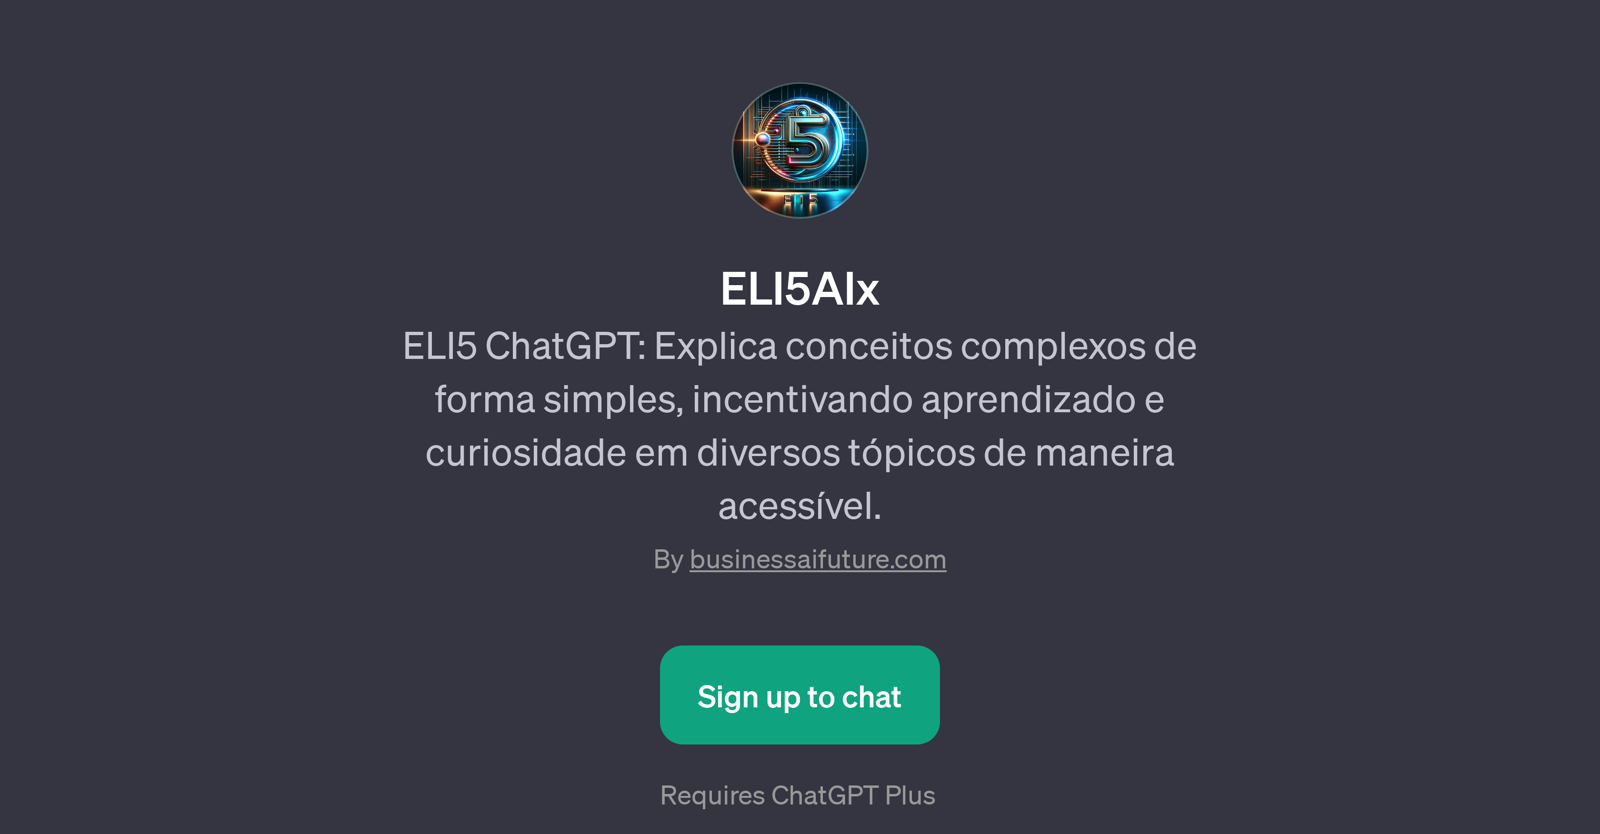 ELI5AIx website